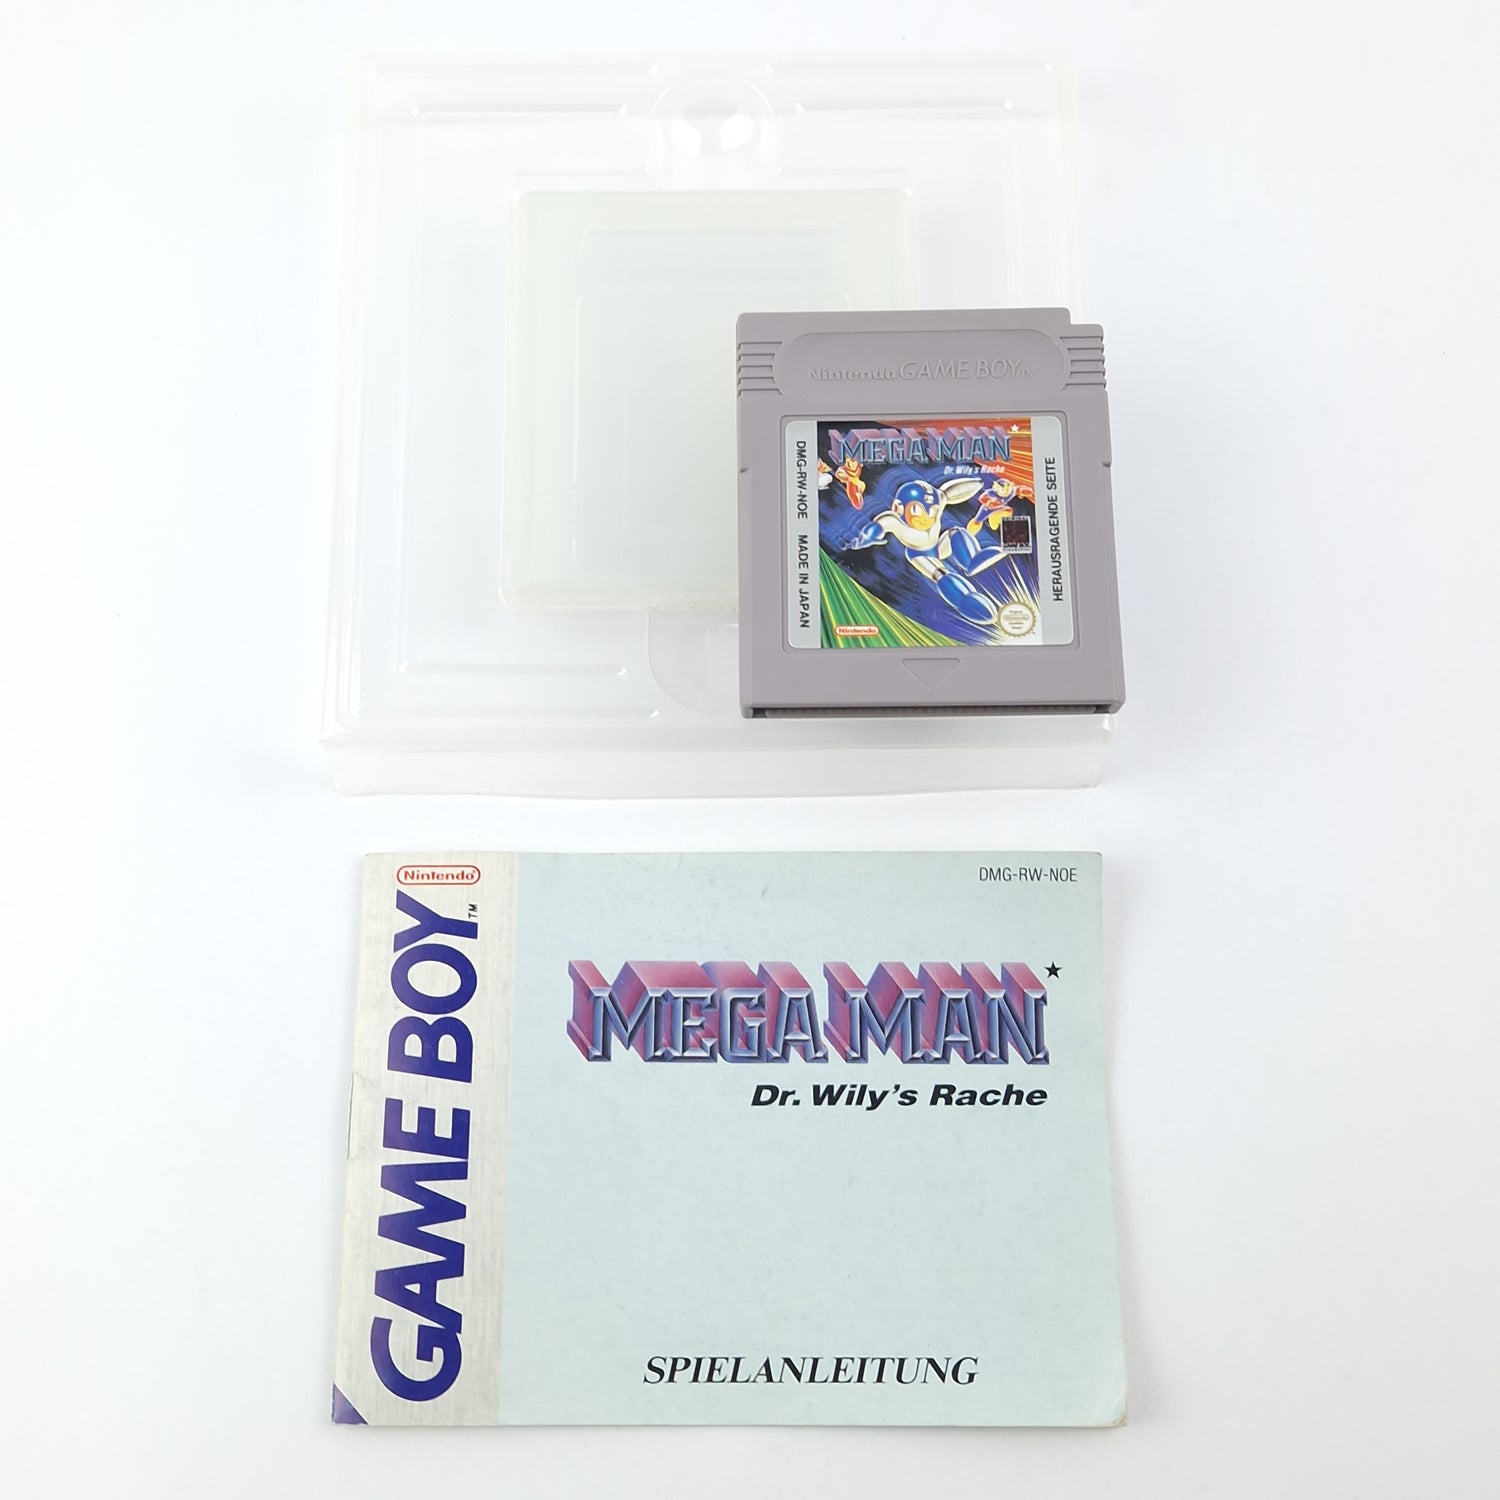 Nintendo Gameboy Game: Mega Man Dr. Willy's Revenge - OVP / Game Boy Classic NOE